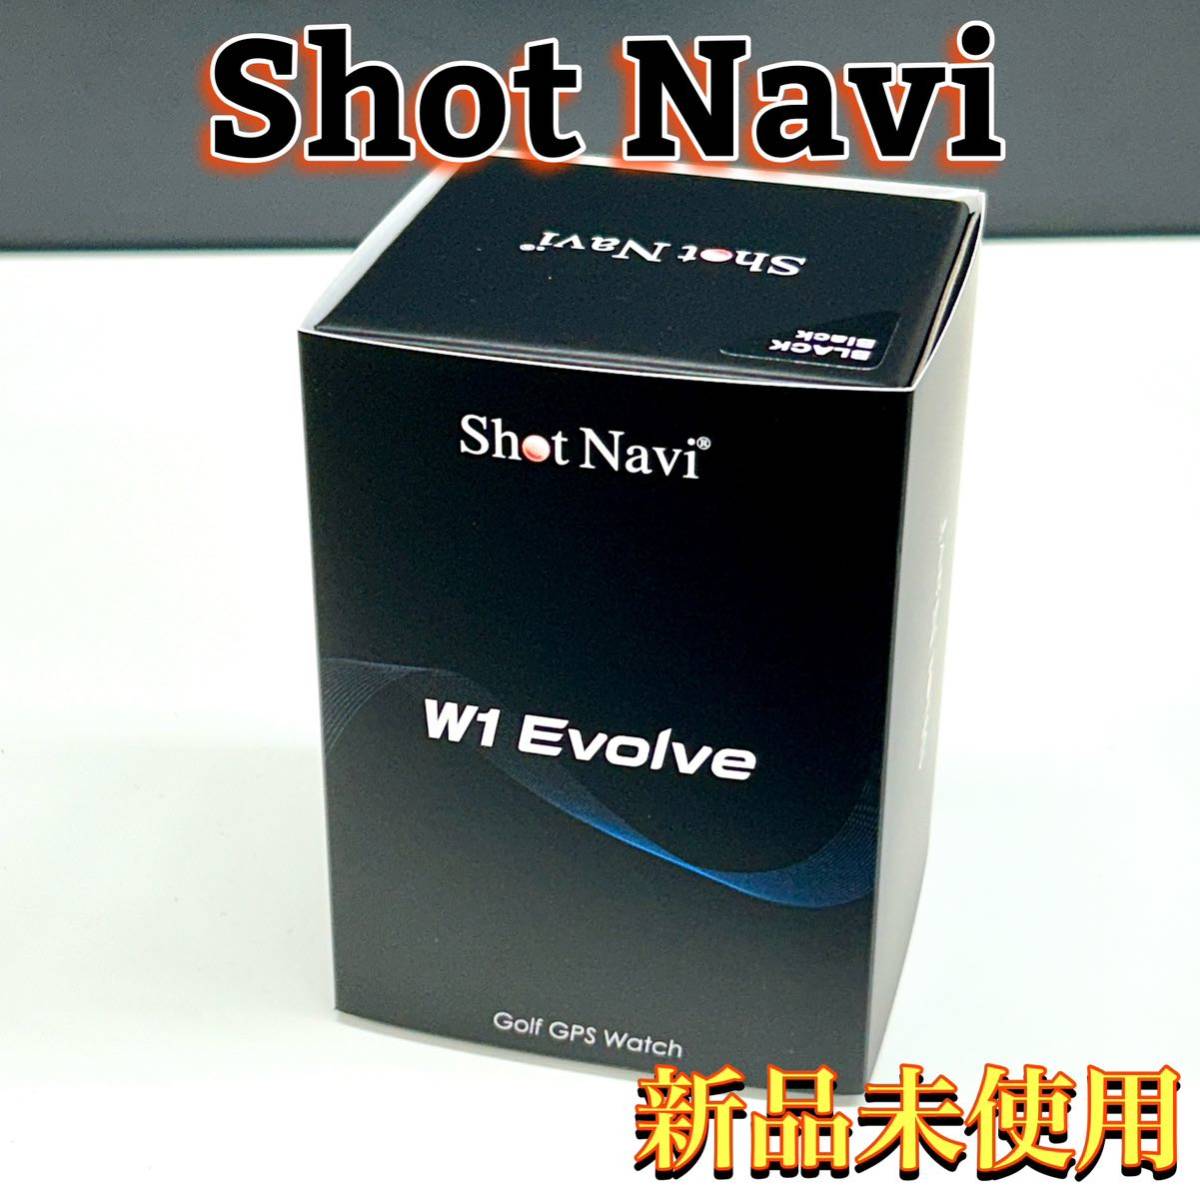 新品未使用 SHOT NAVI ショットナビ W1 EVOLVE エボルブ ブラック＆ブラック GPS ゴルフウォッチ 腕時計型 距離計 管:020903_画像1